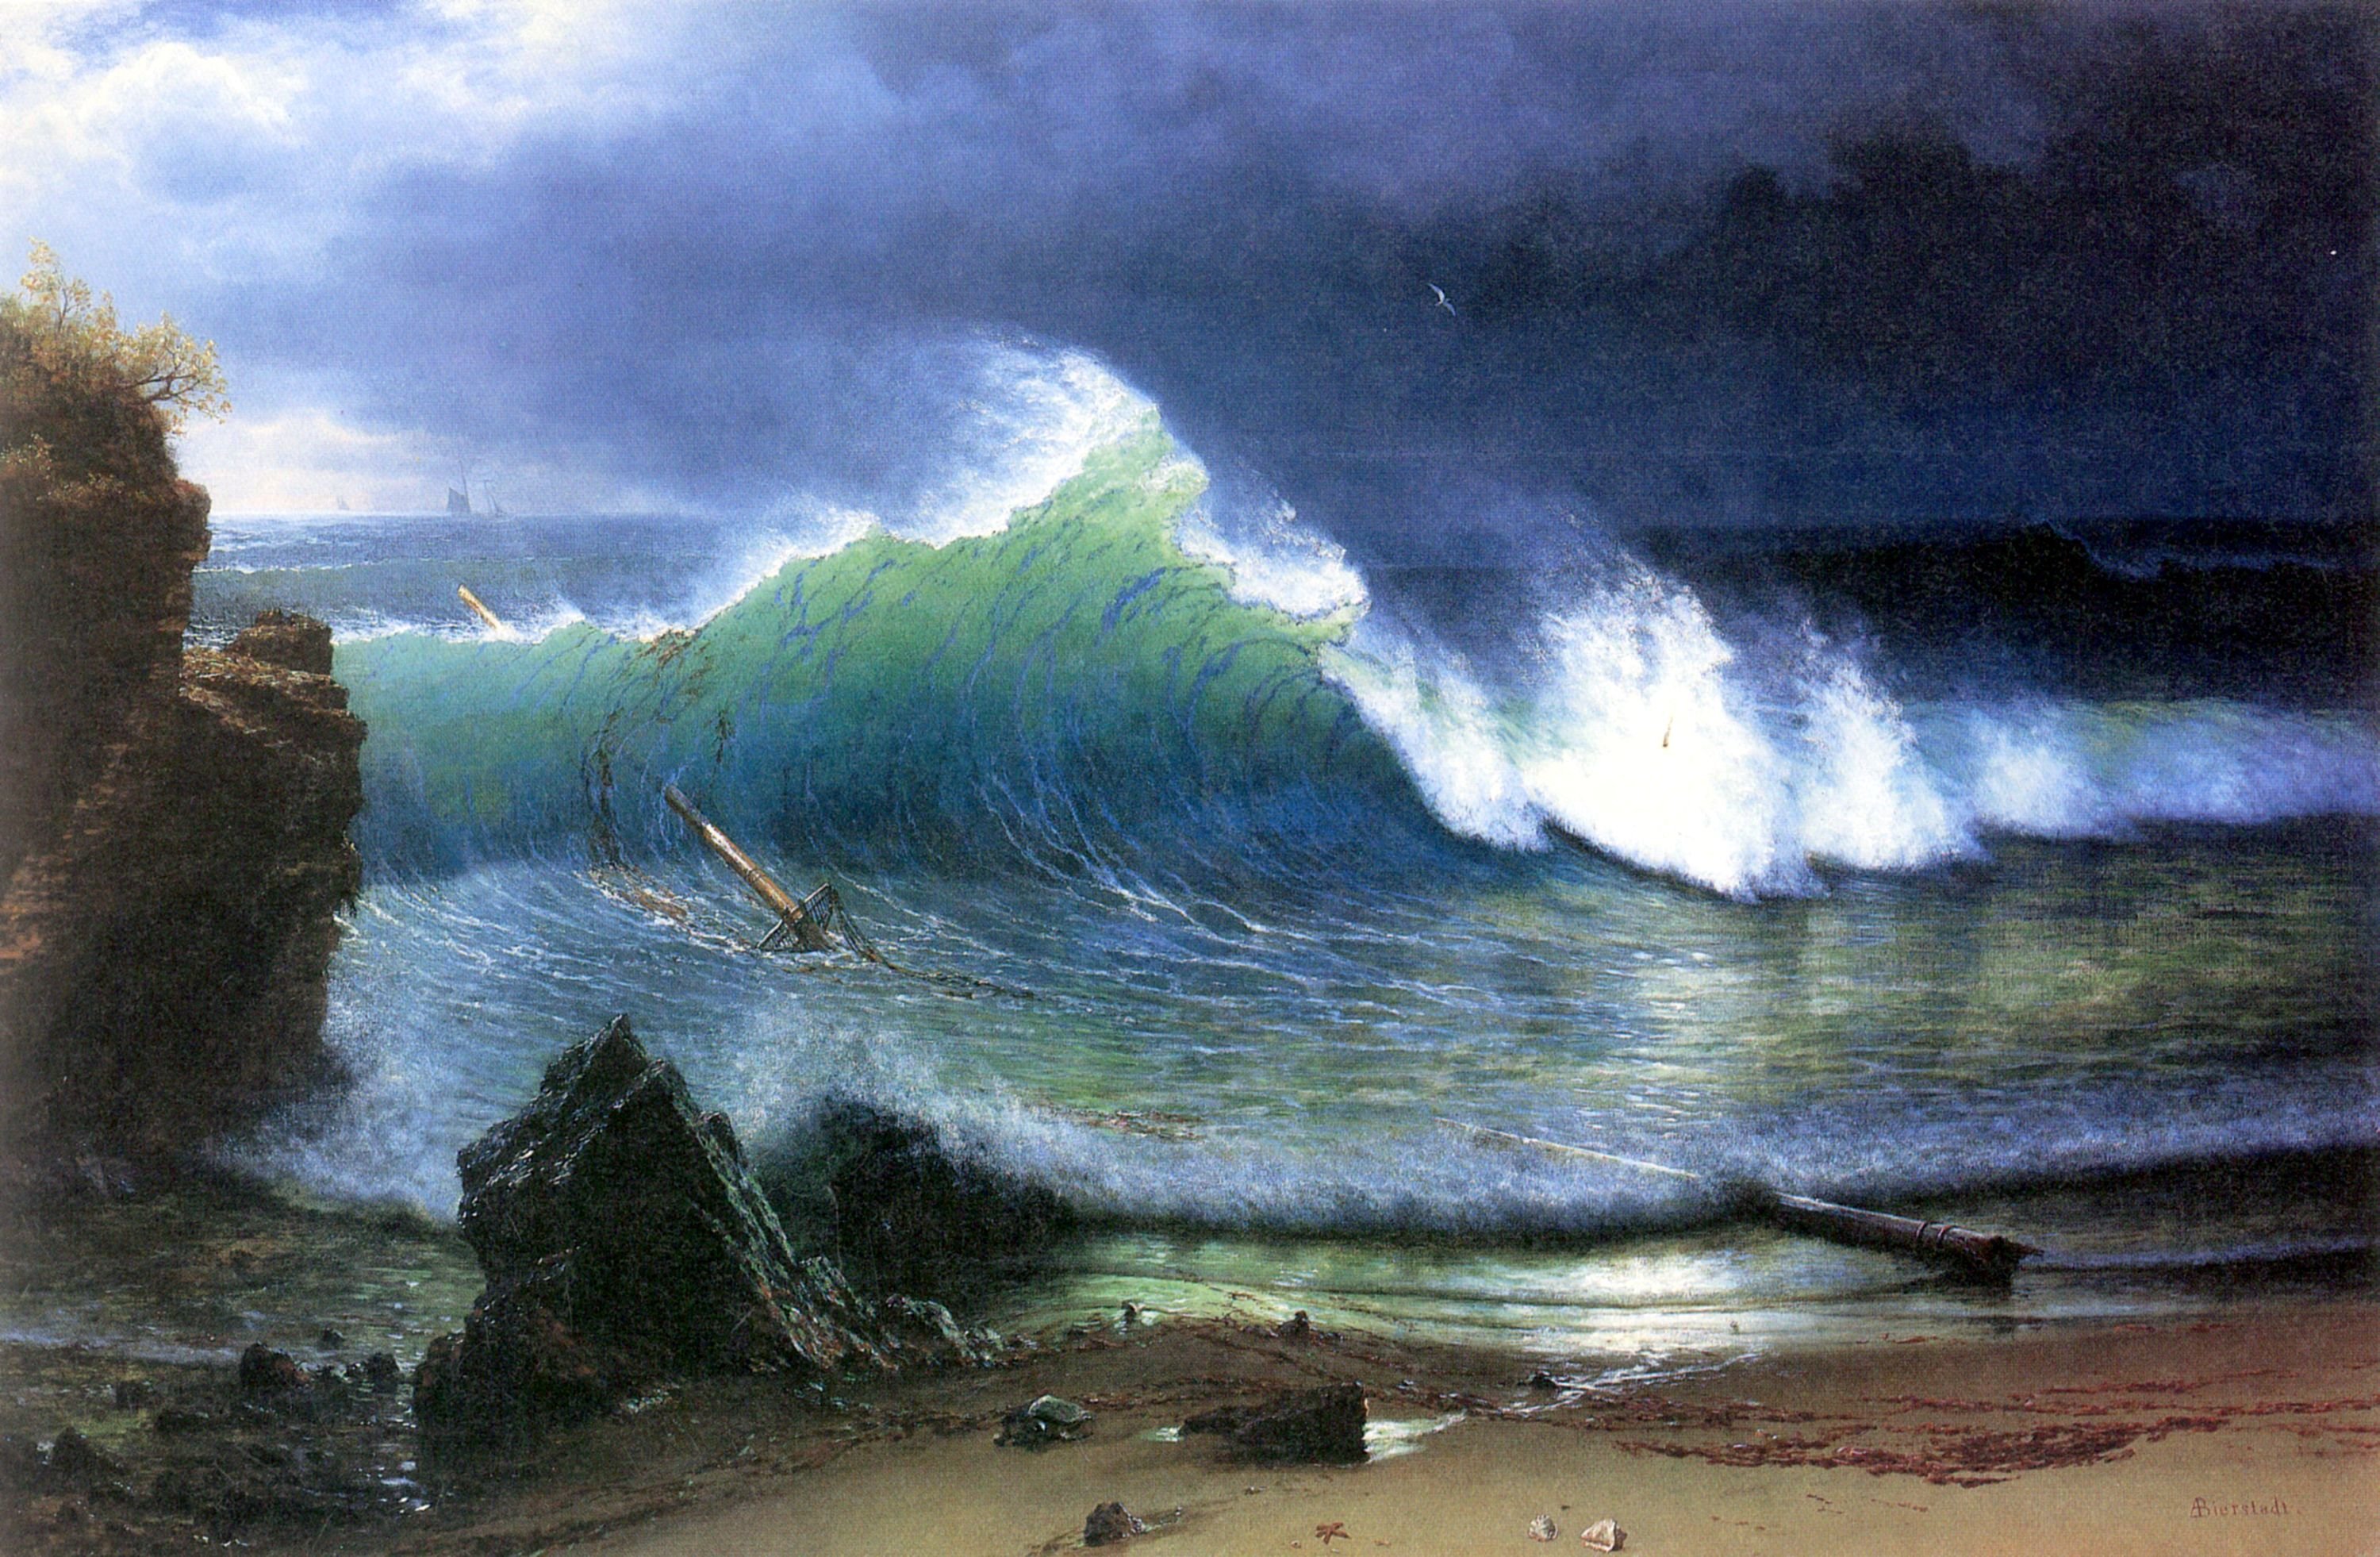 Альберт Бирштадт (1830 - 1902) – американский художник